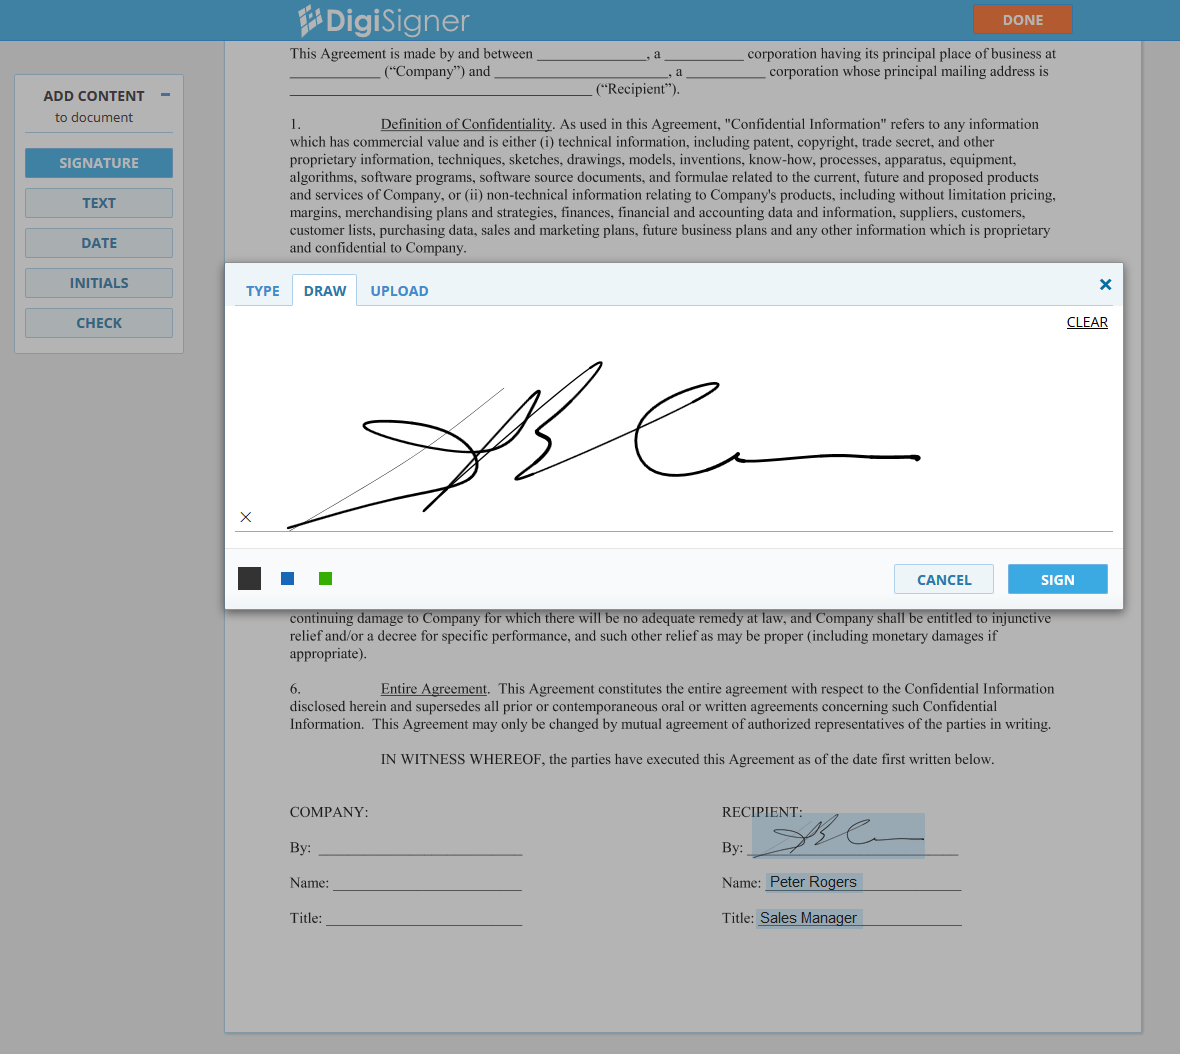 create pdf signature online